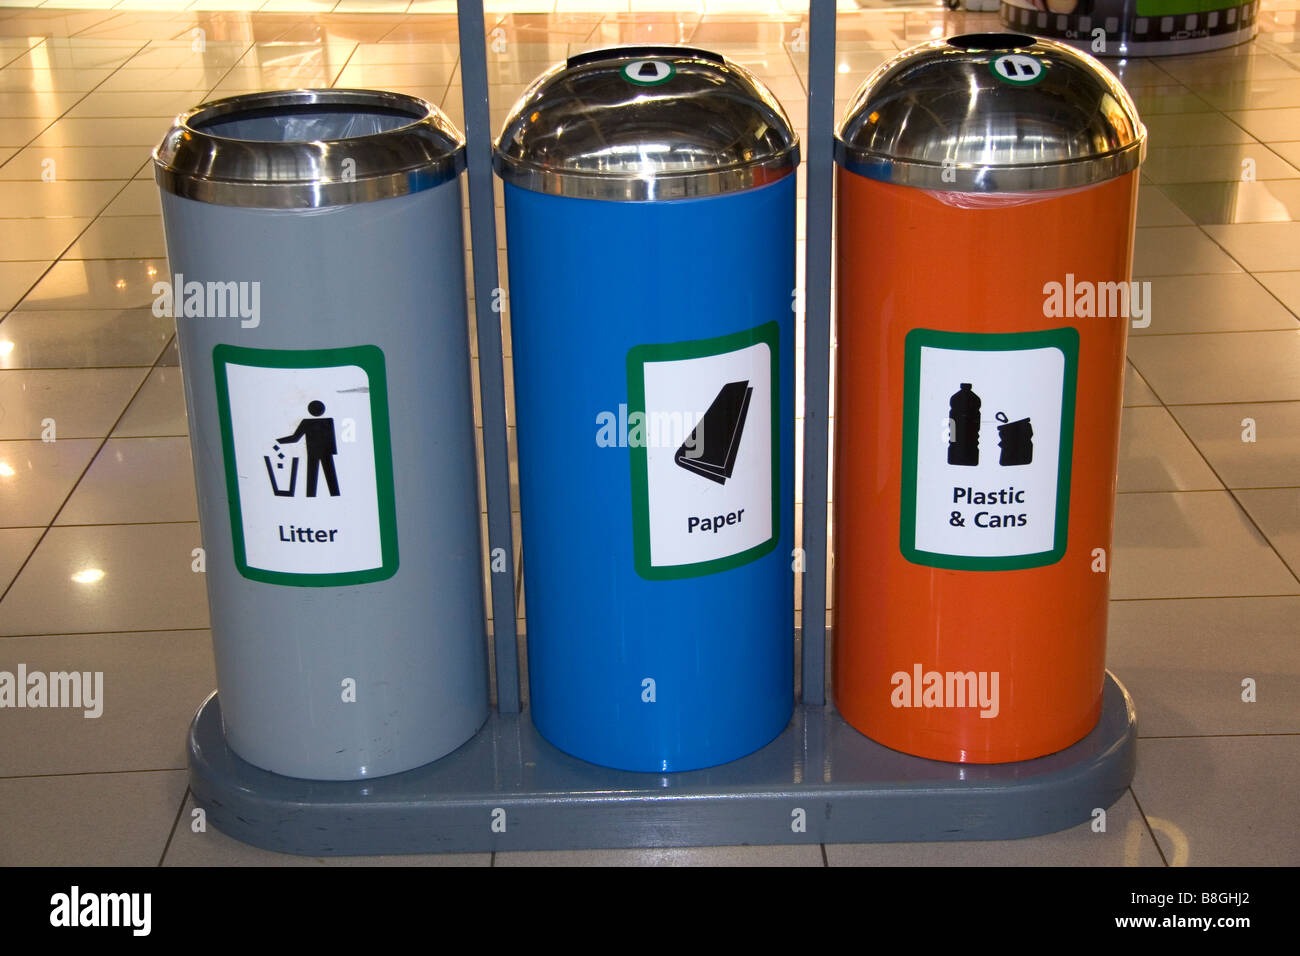 Recycling-Station am Flughafen London Heathrow im Vereinigten Königreich Stockfoto